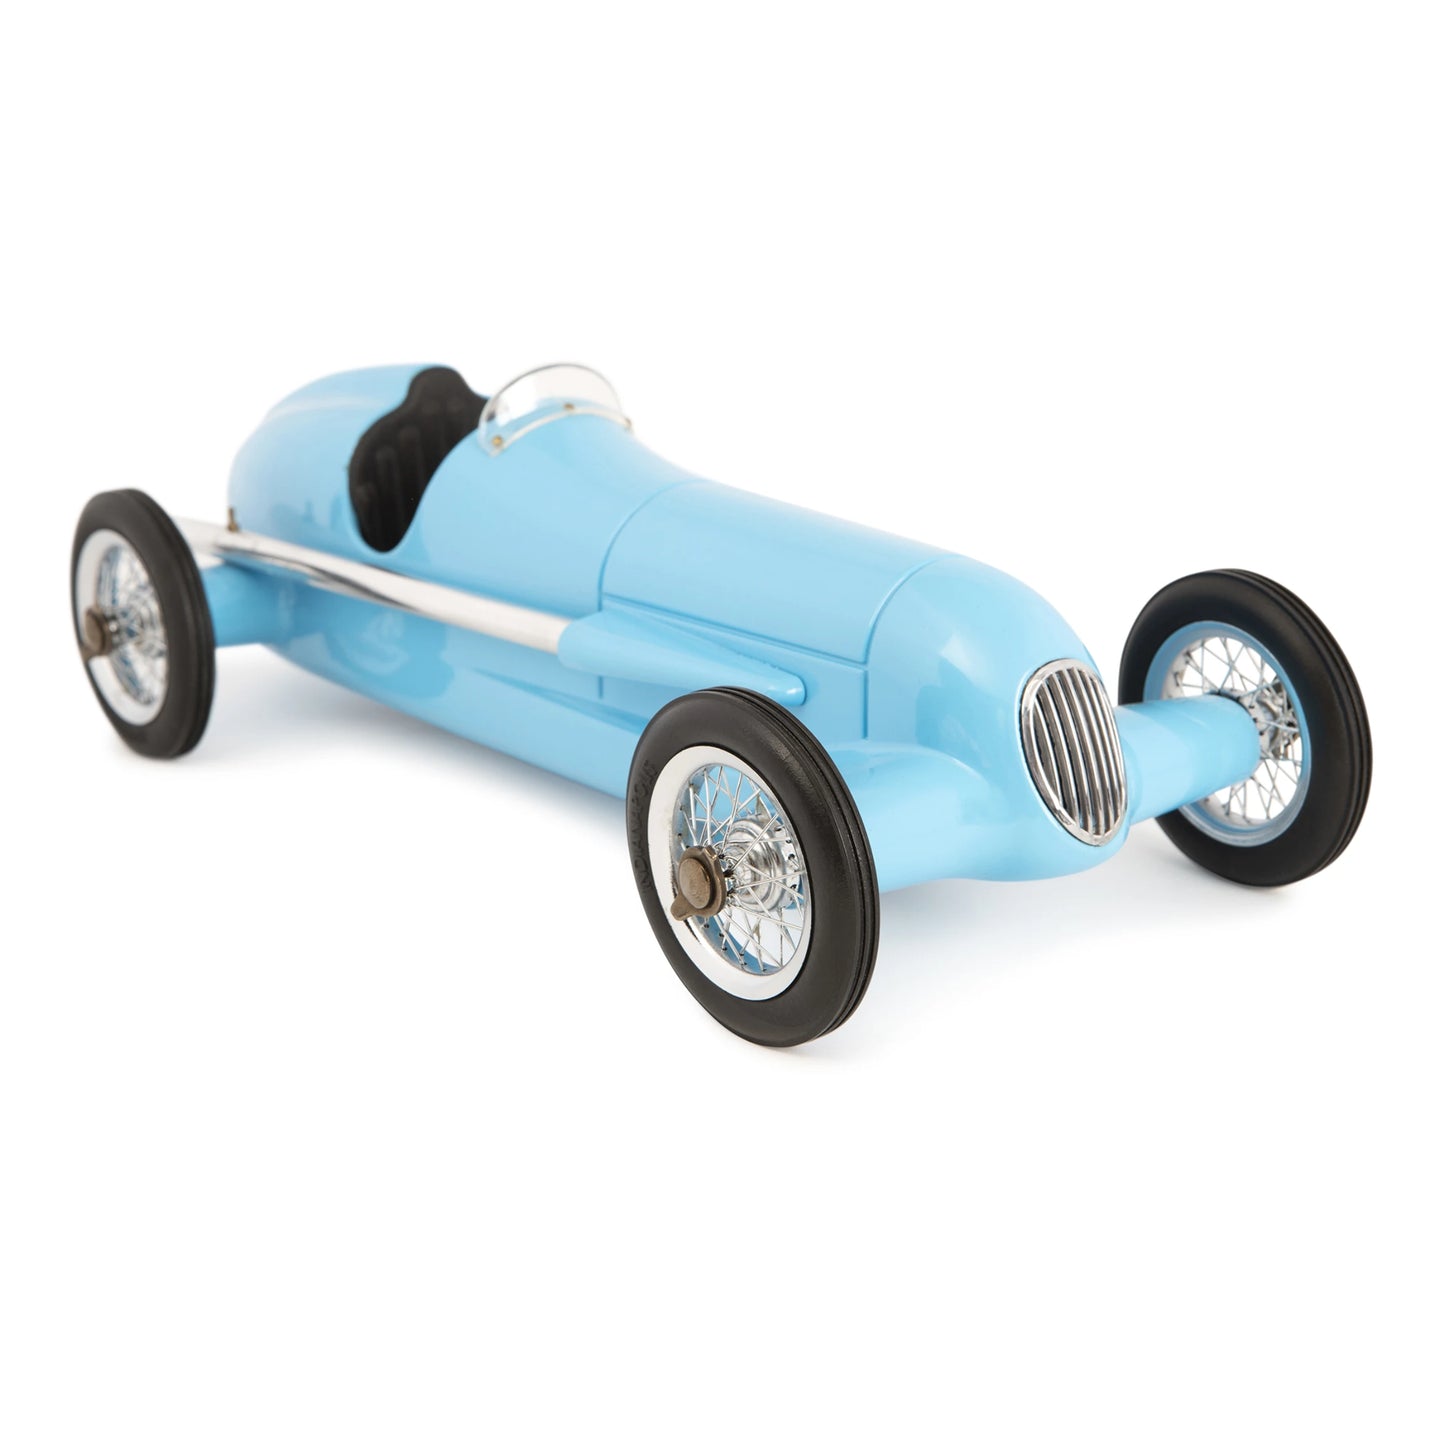 Authentic Models Blue Racer - PC016